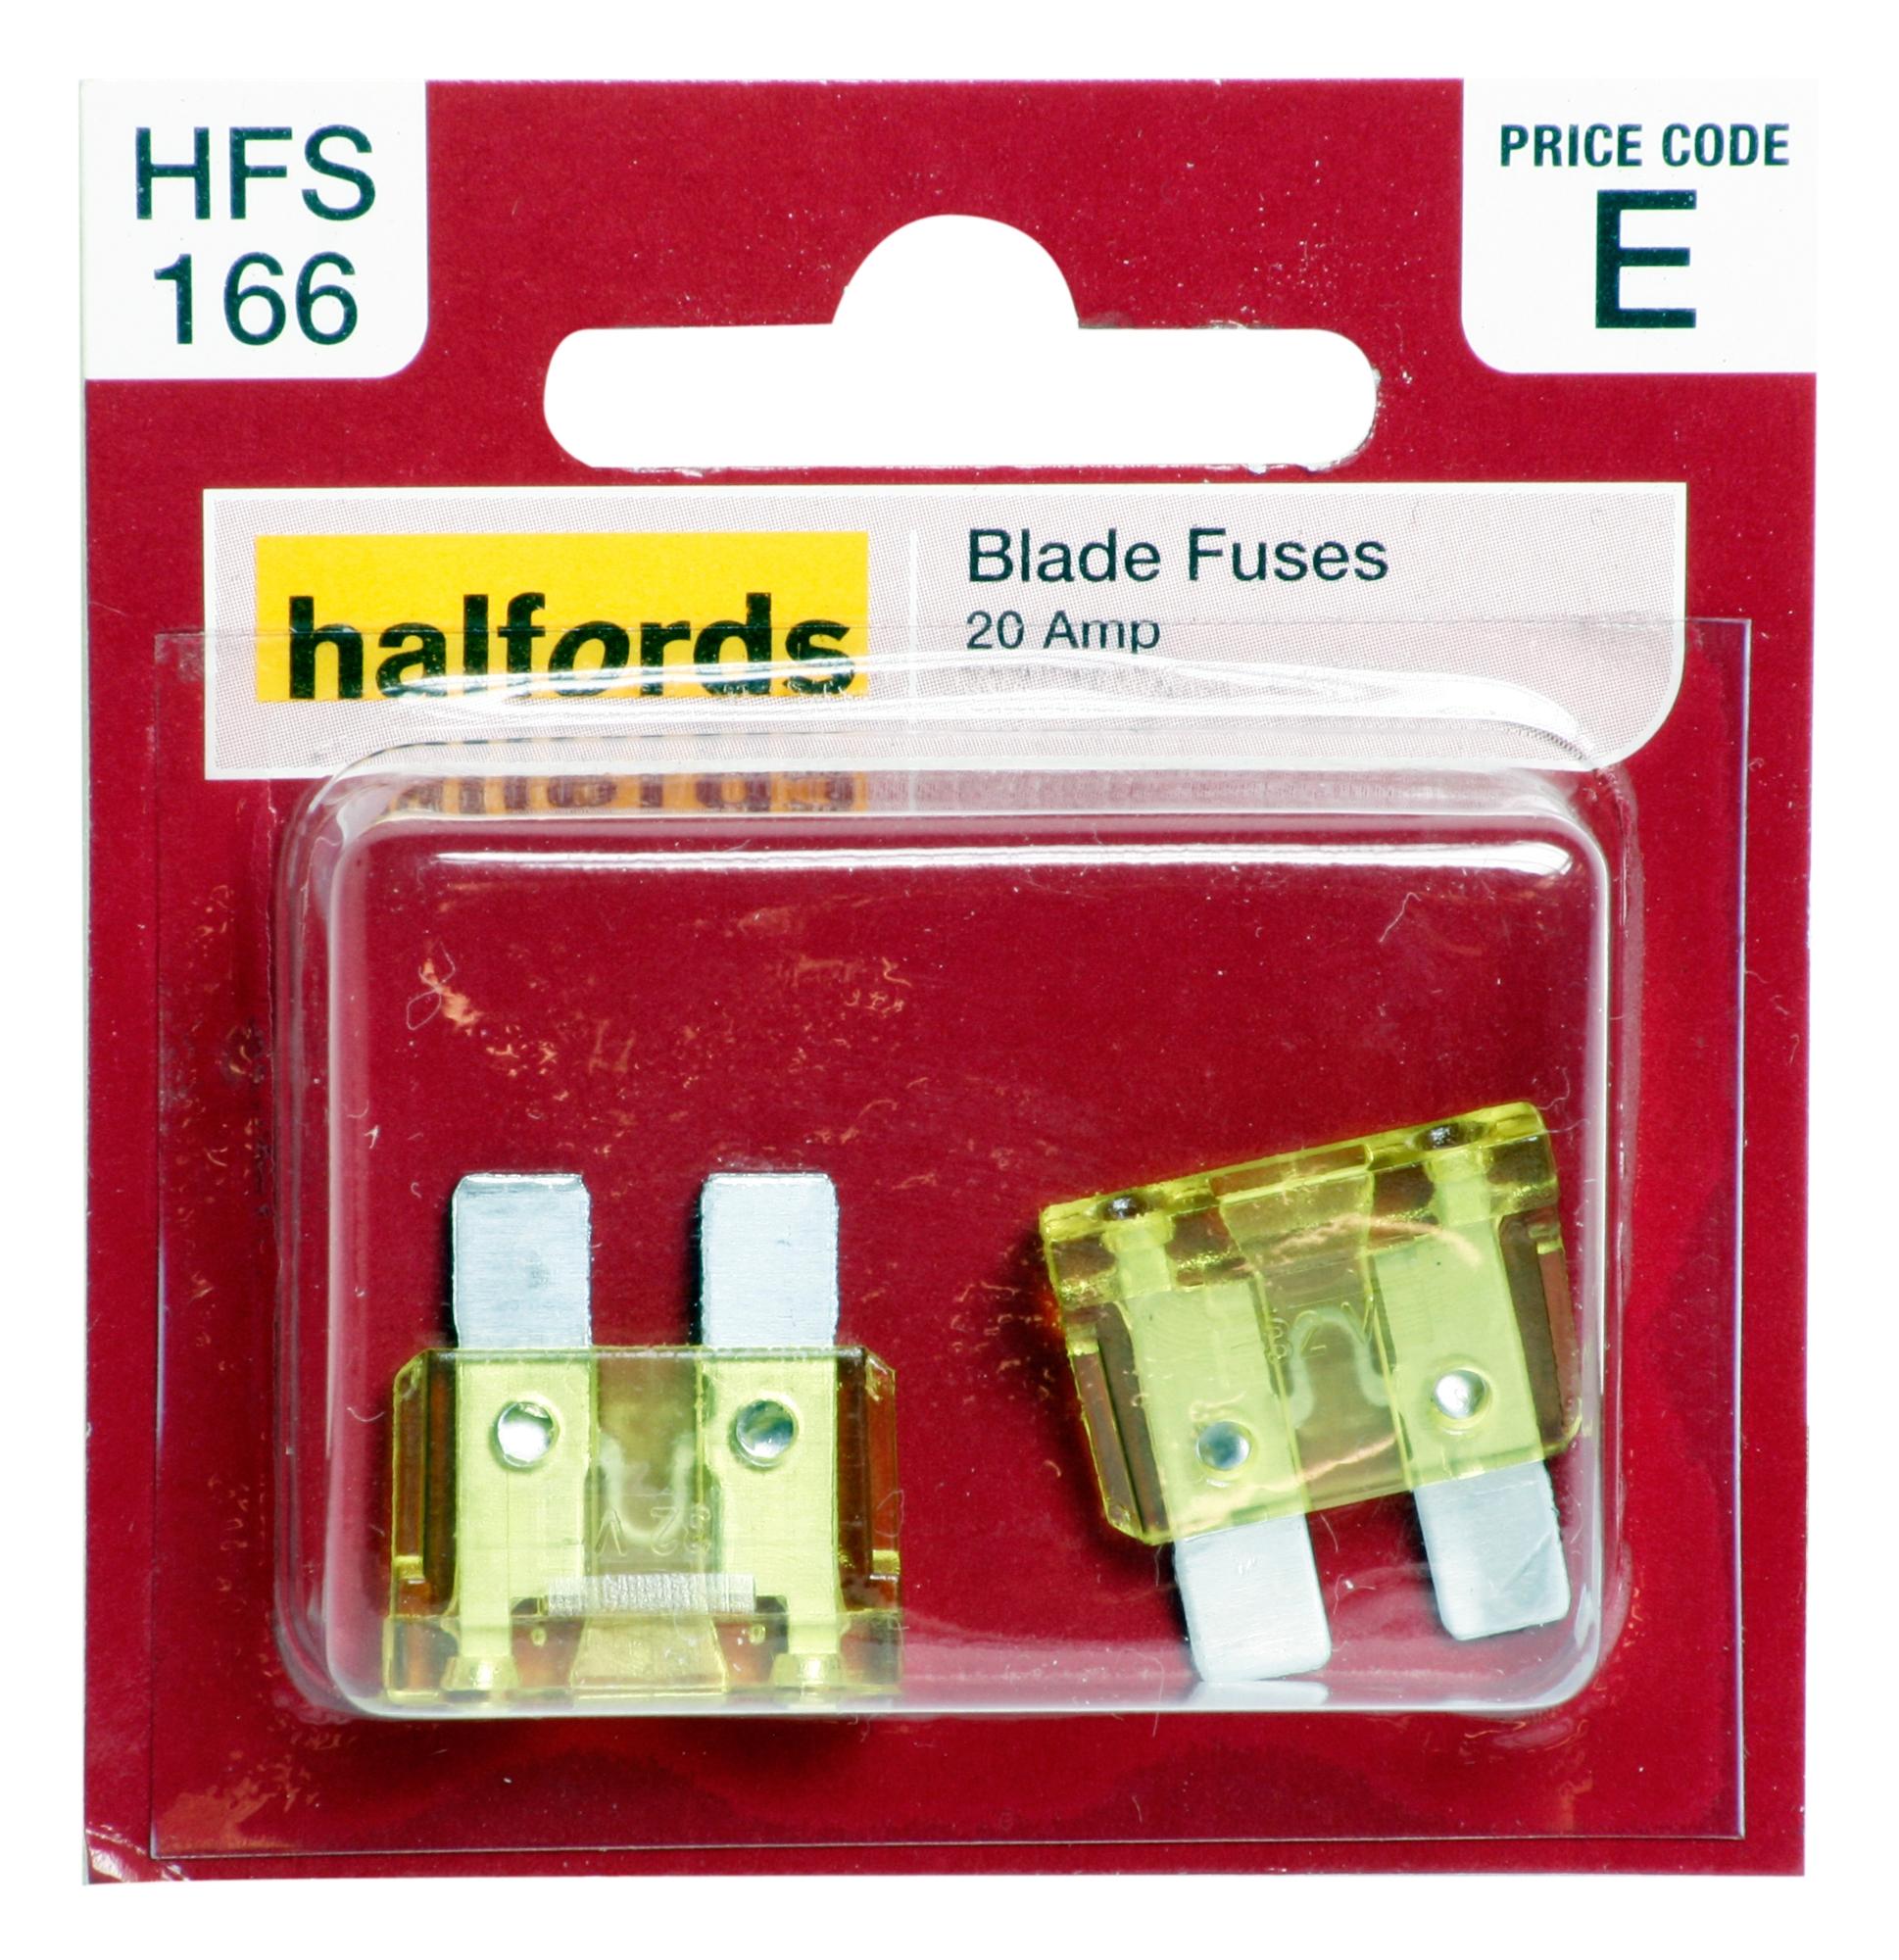 Halfords Blade Fuses 20 Amp